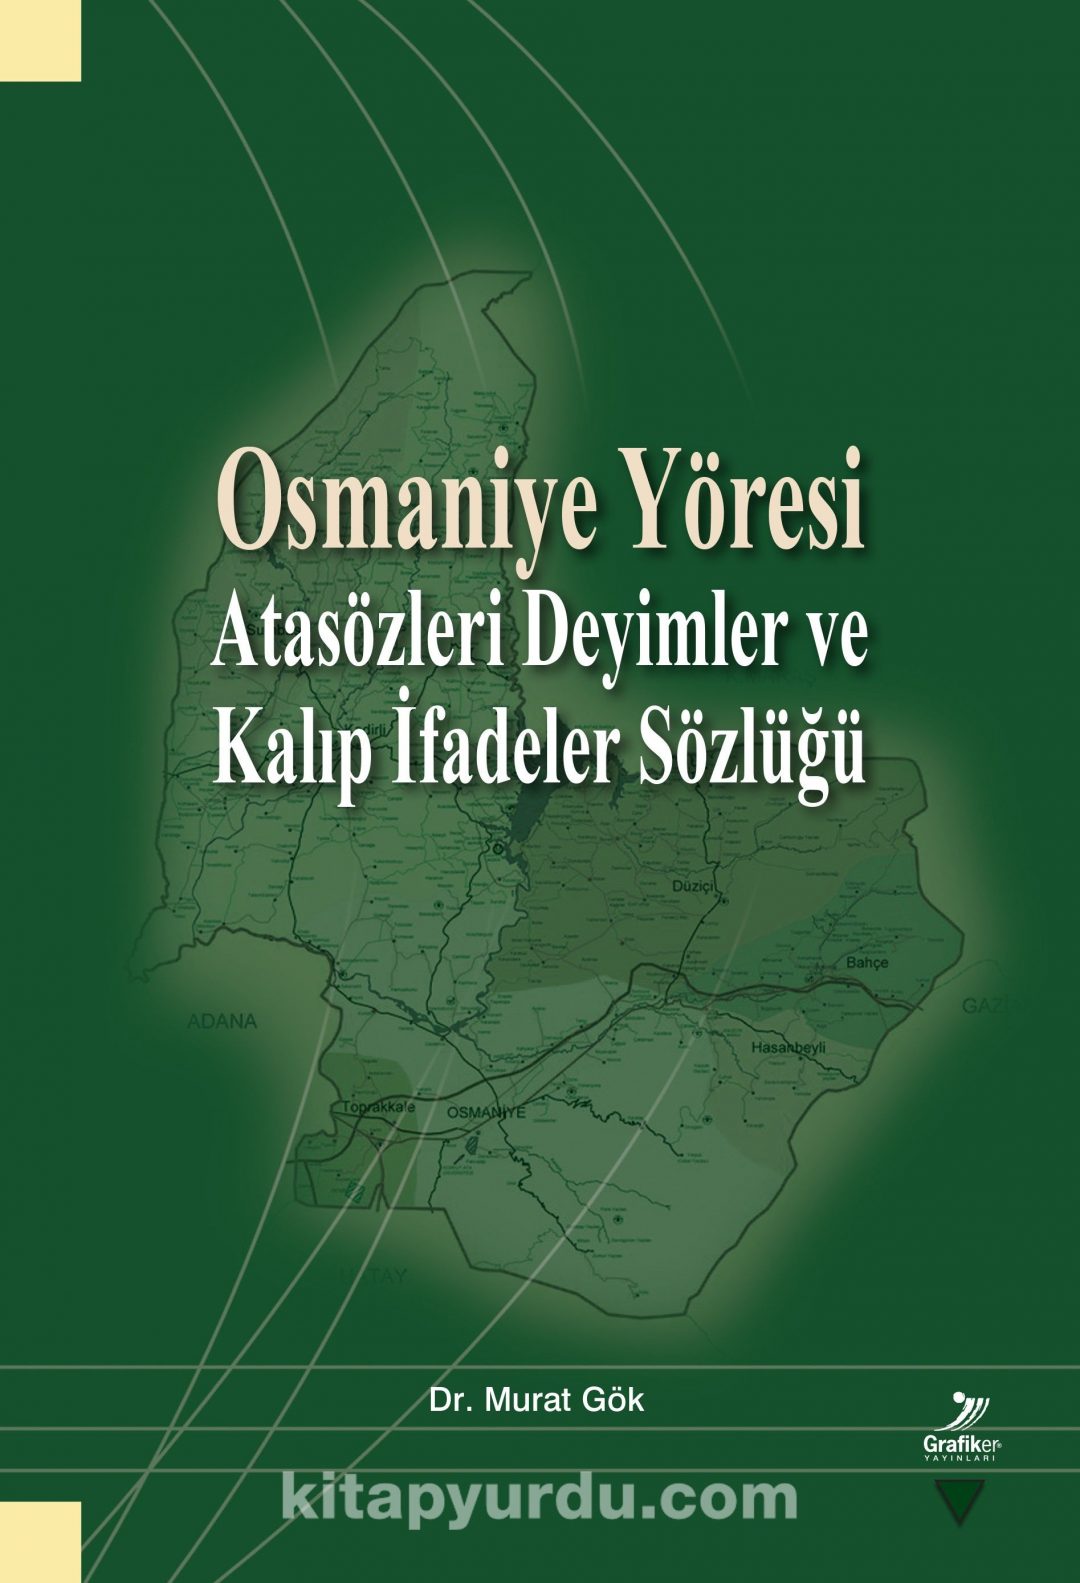 Osmaniye Yöresi & Atasözleri Deyimler ve Kalıp İfadeler Sözlüğü